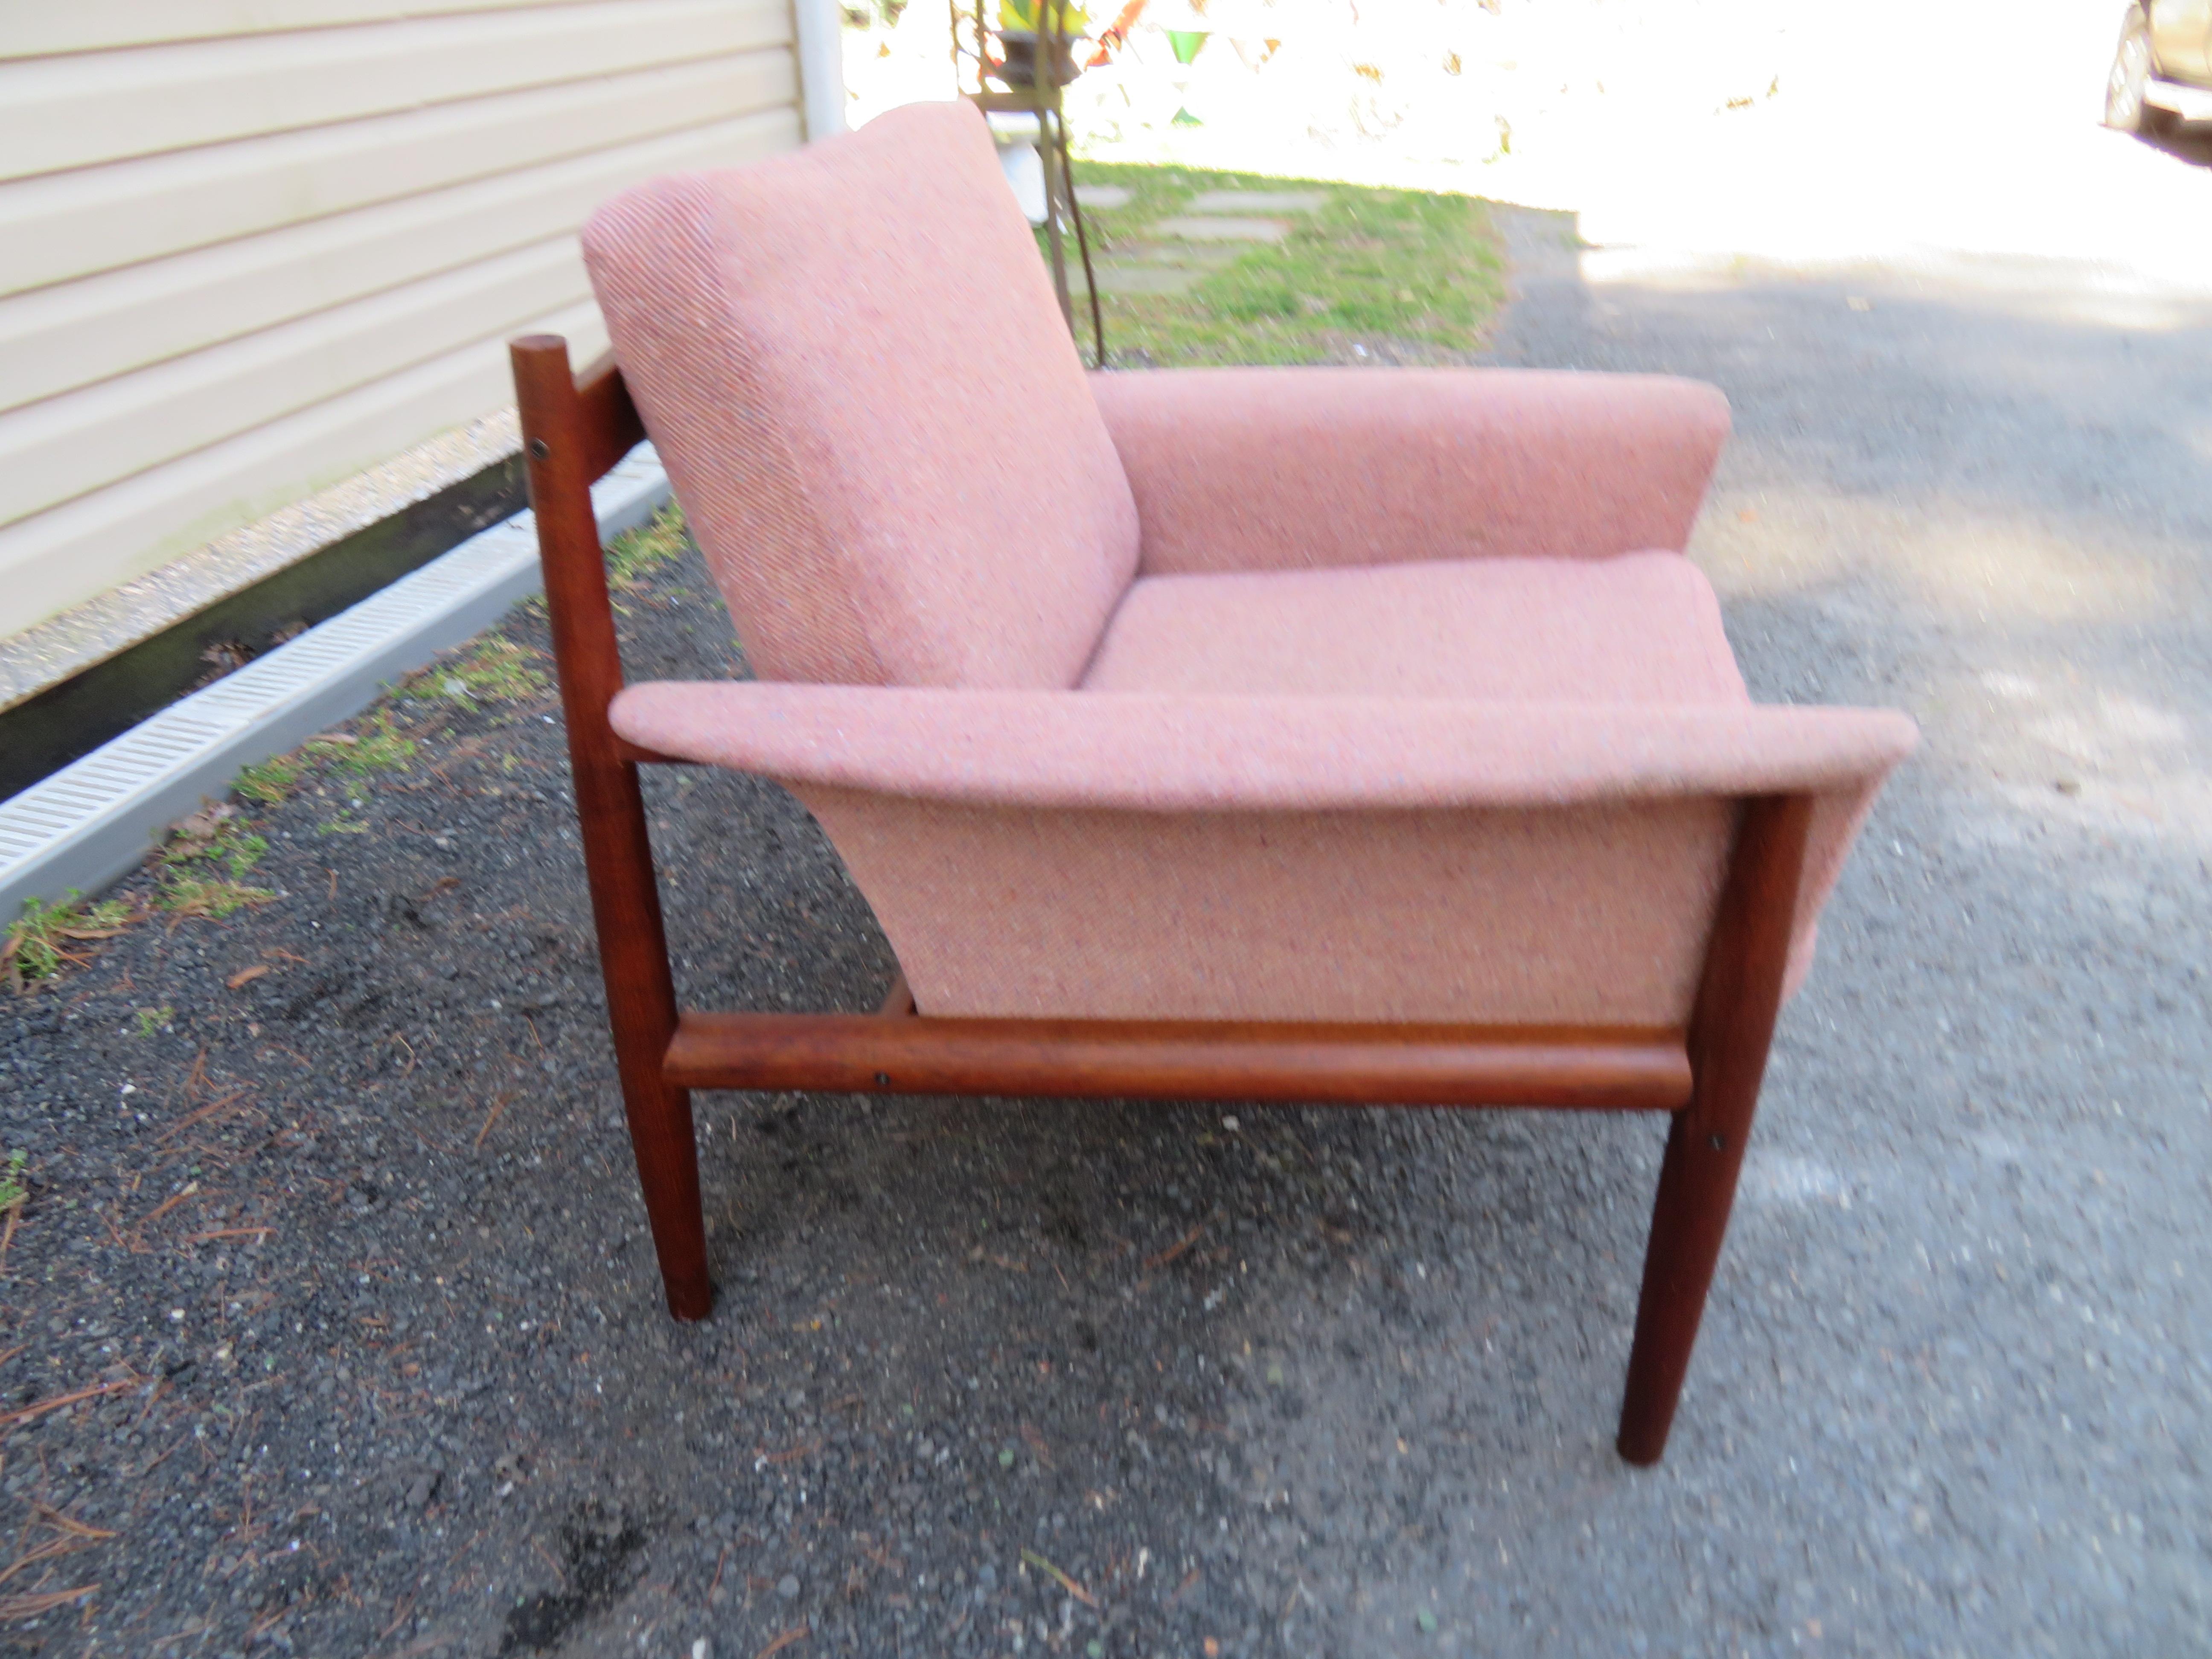 Hervorragender Teakholz-Sessel von Grete Jalk. Dieser Stuhl behält seinen ursprünglichen mauvefarbenen Webstoff in schönem Vintage-Zustand - einige leichte Flecken - Reinigung empfohlen. Sehr brauchbar, wie es ist, aber wäre spektakulär in etwas